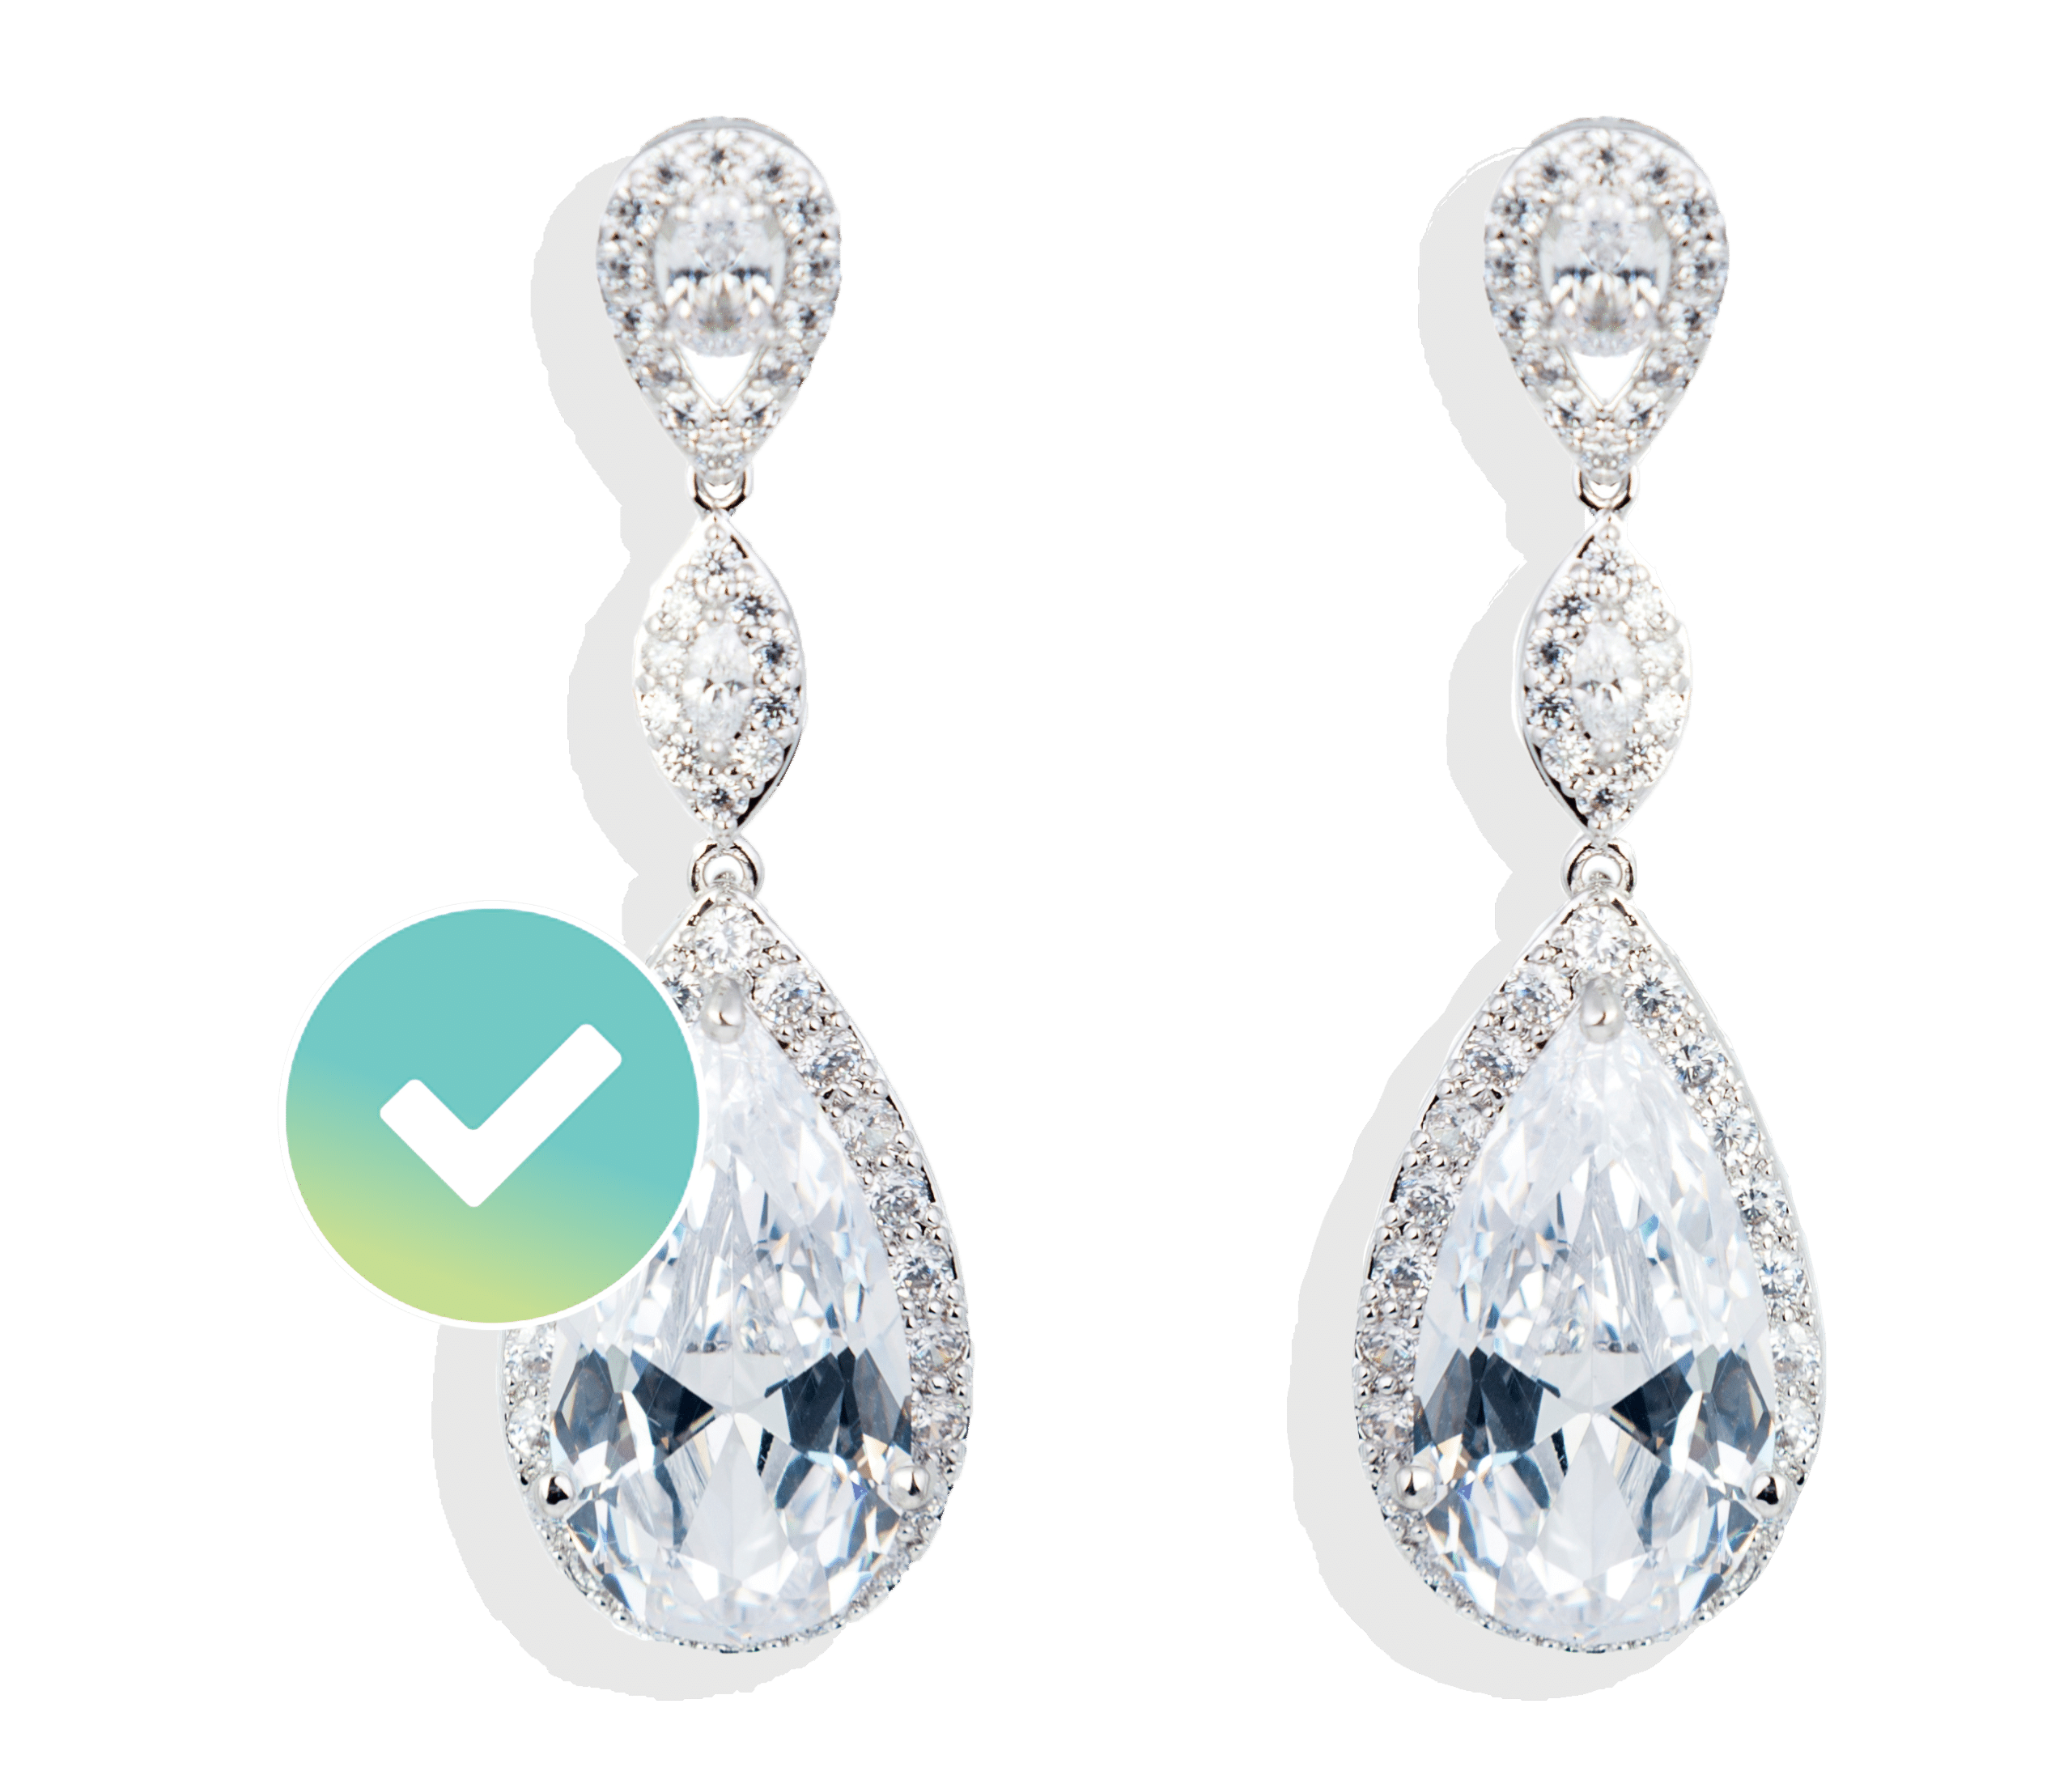 Tear drop diamond earrings insured by BriteCo Jewelery Insurance